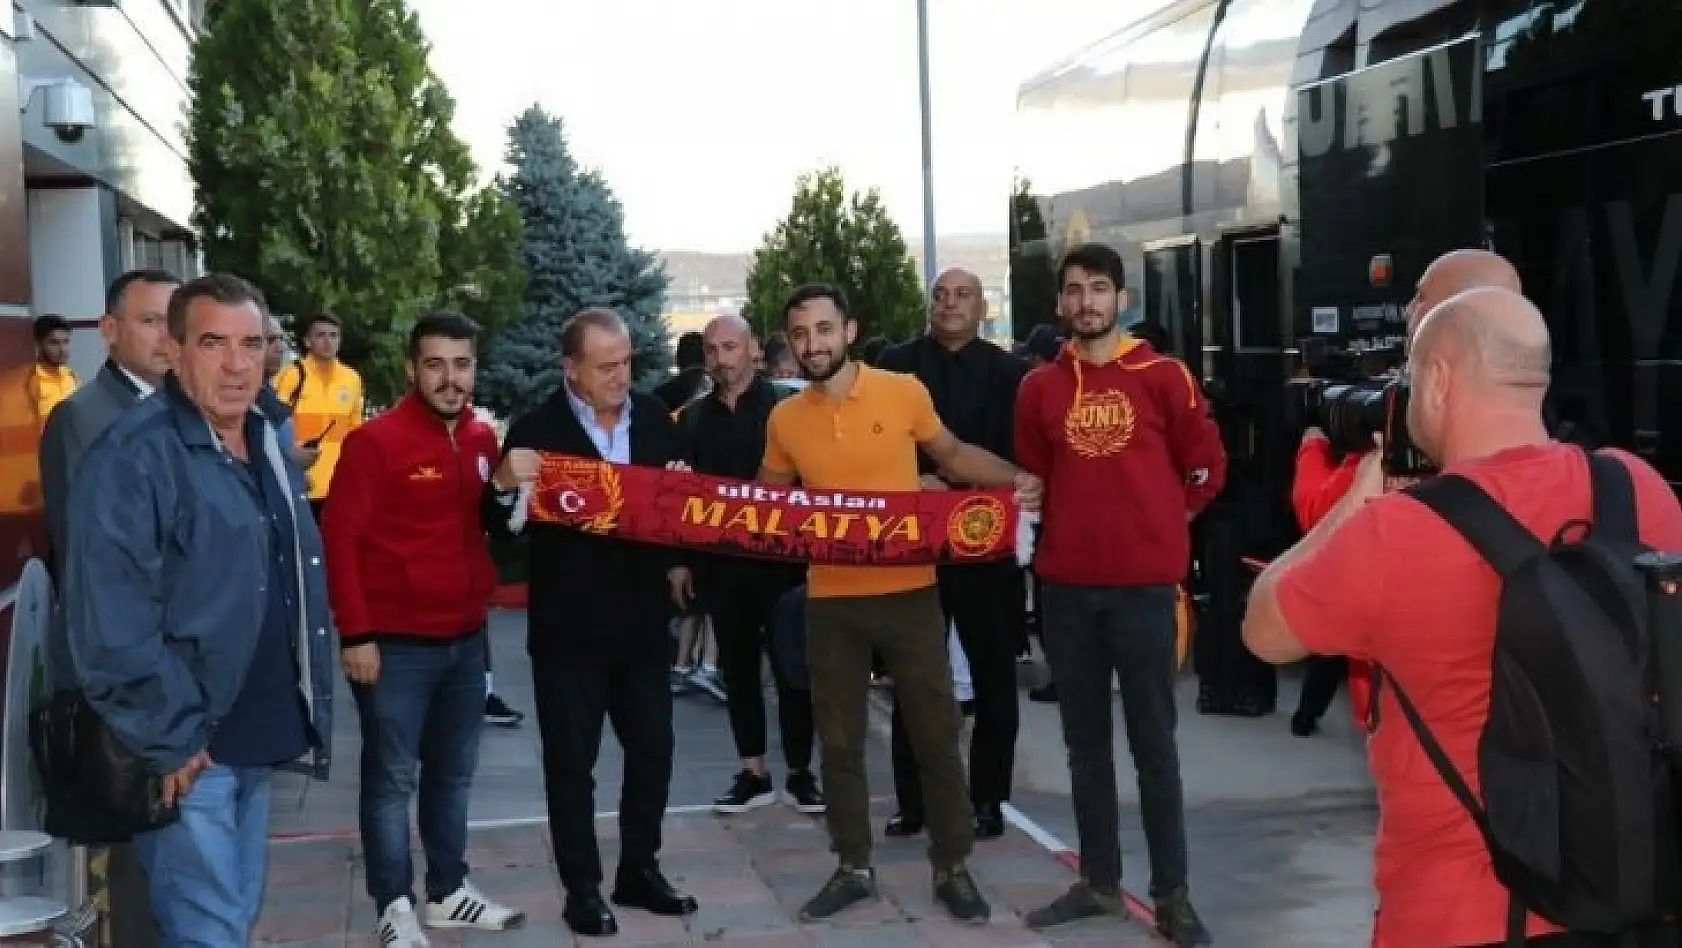 Galatasaray'a coşkulu karşılama